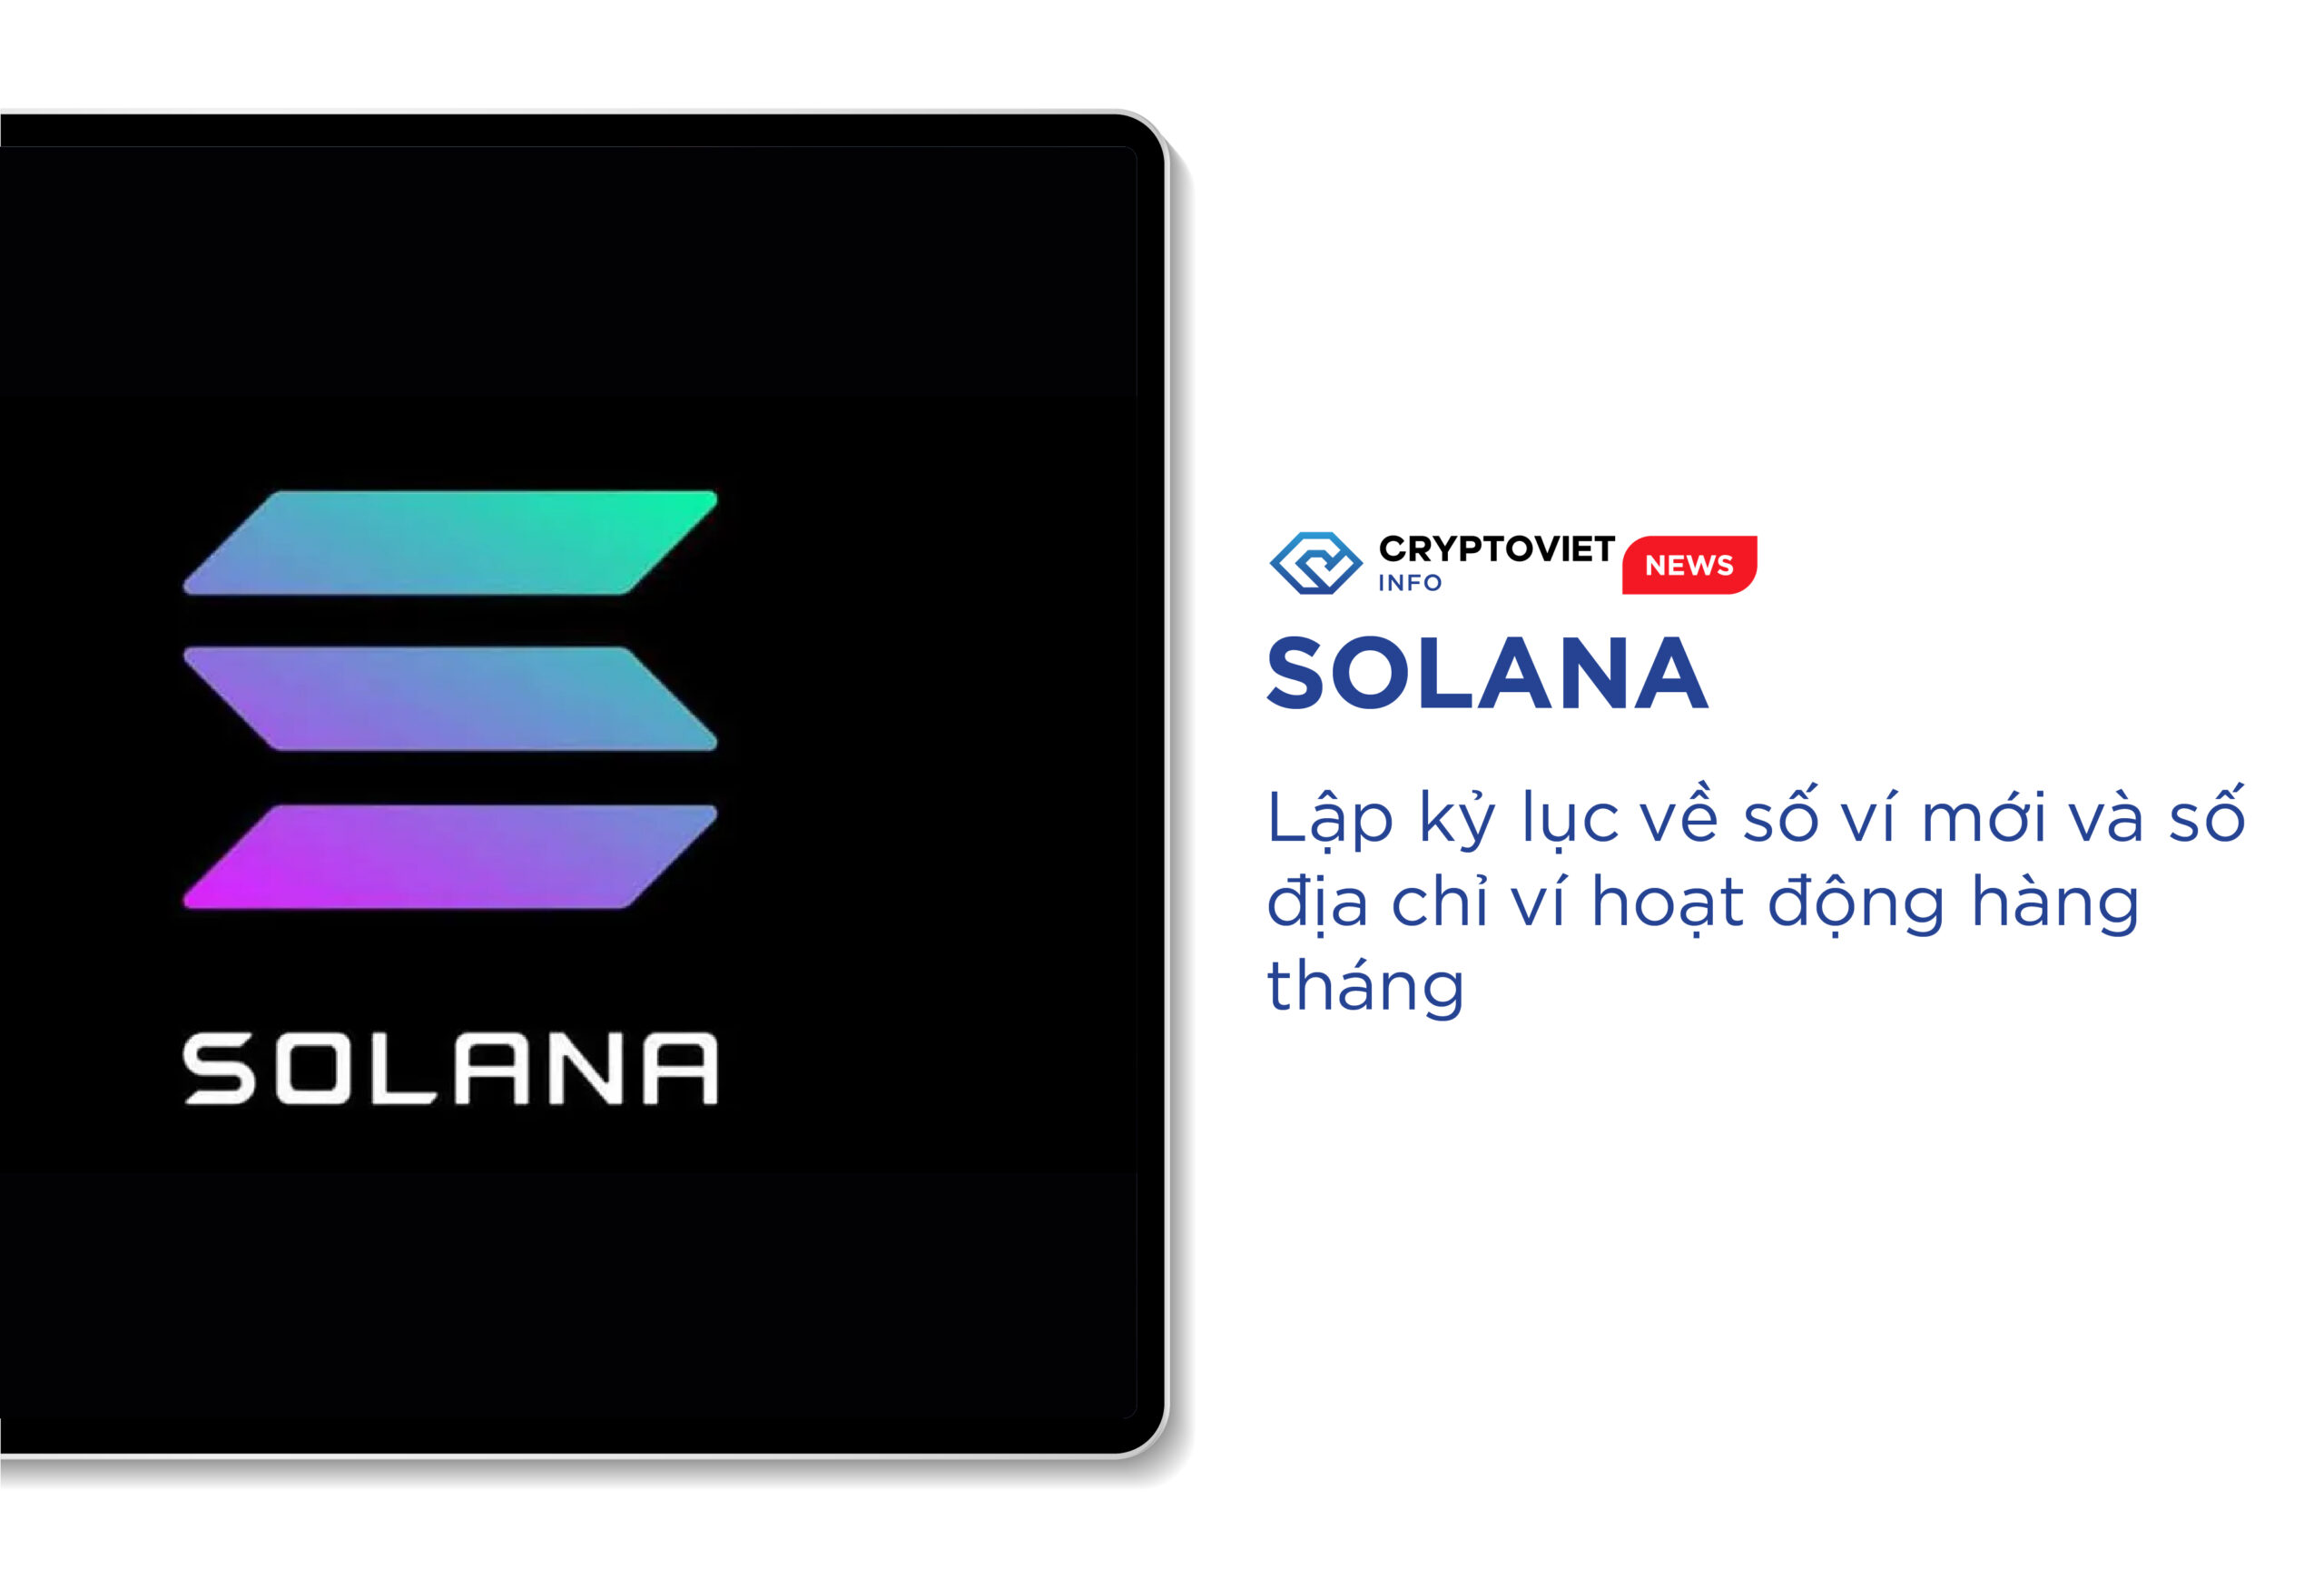 Solana lập kỷ lục về số ví mới và số địa chỉ ví hoạt động hàng tháng